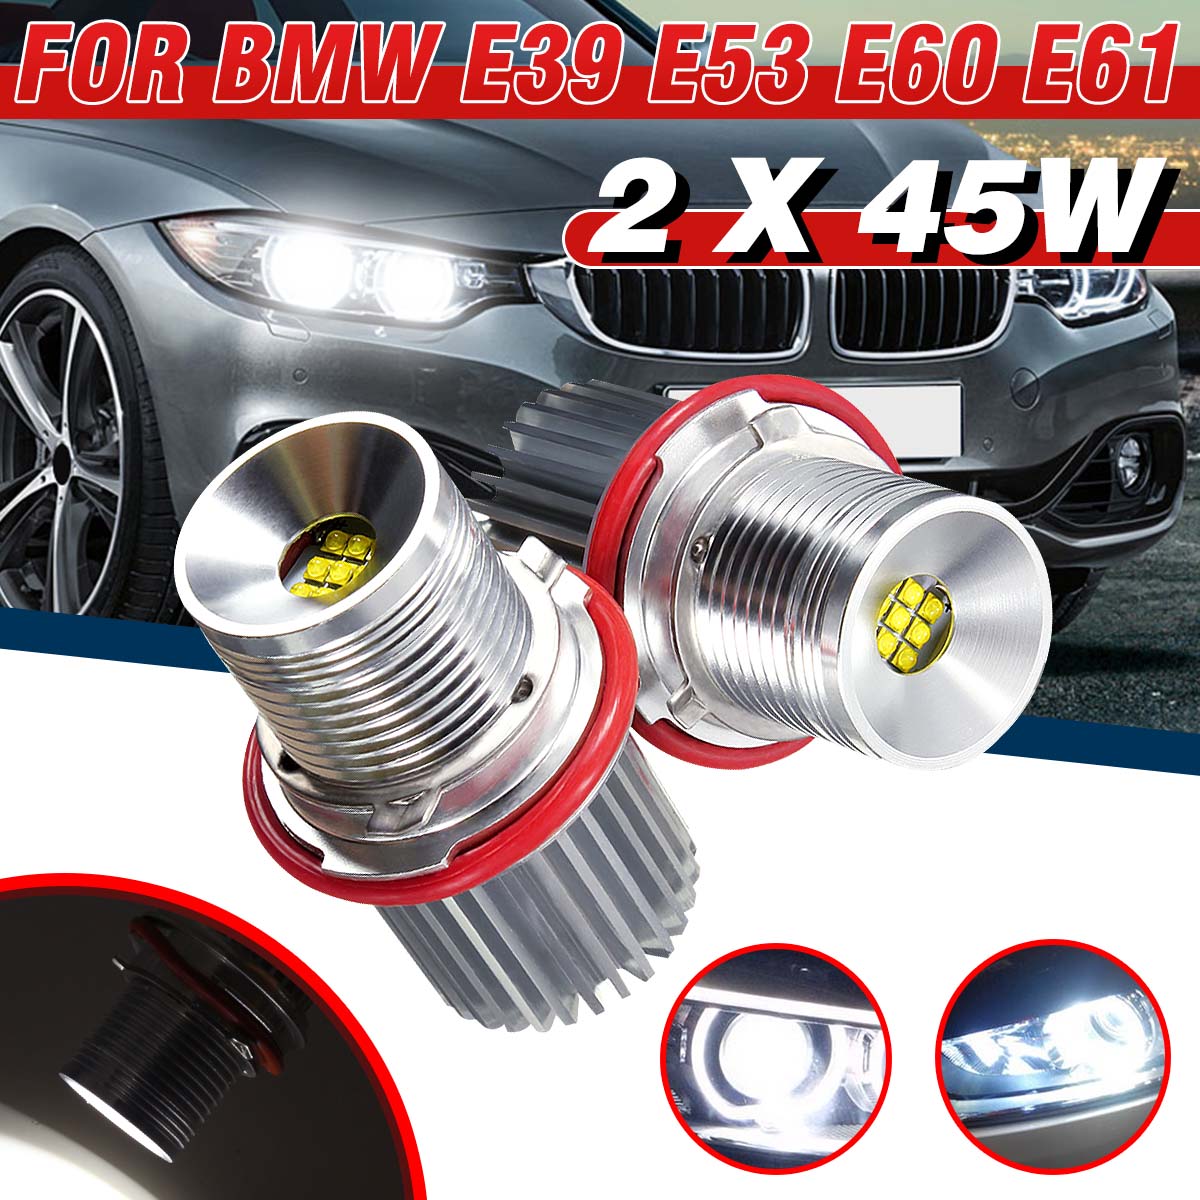 2Pcs 45W Wit Led Auto Hoek Ogen Led Marker Halo Ring Light Bulb Voor Bmw E39 E53 E60 e61 Super Heldere Energie